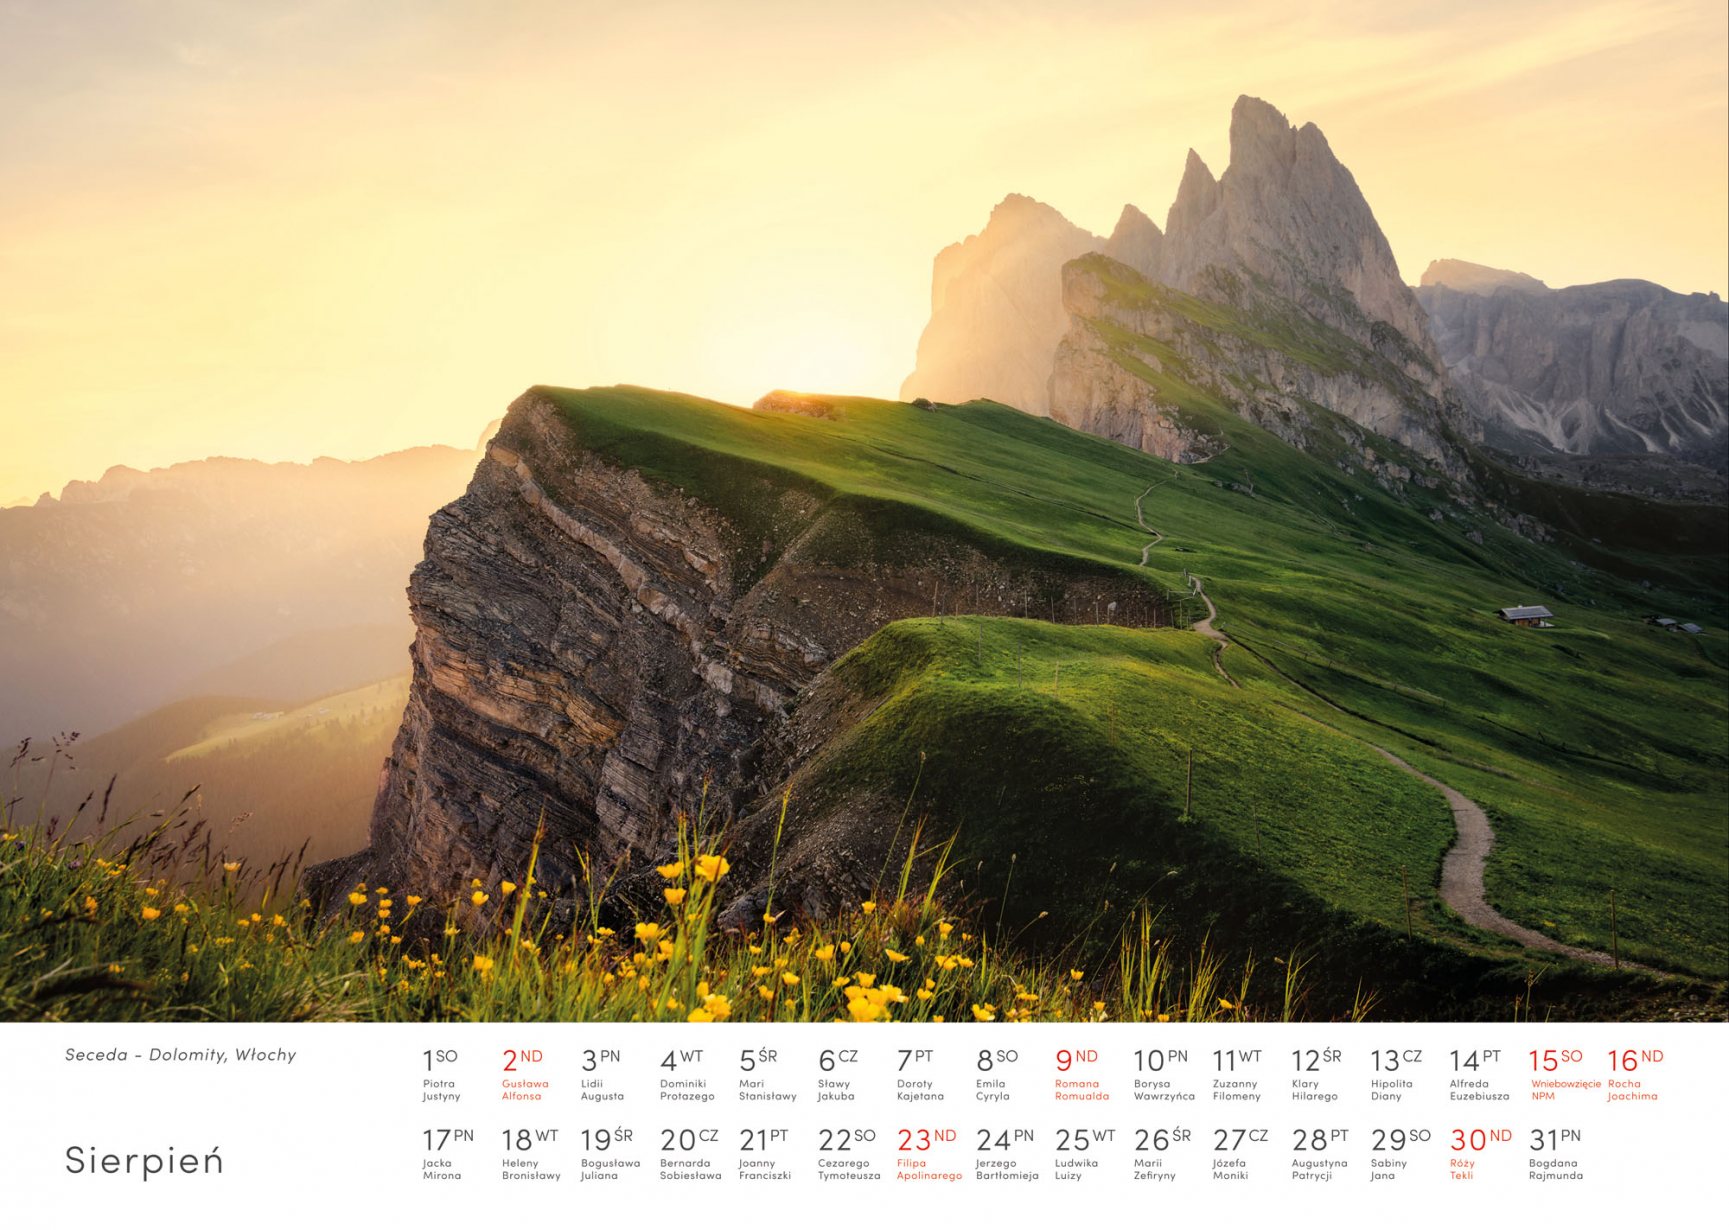 Kalendarz krajobrazy 2020 - Sierpień - Piotr Kałuża - Seceda Dolomity